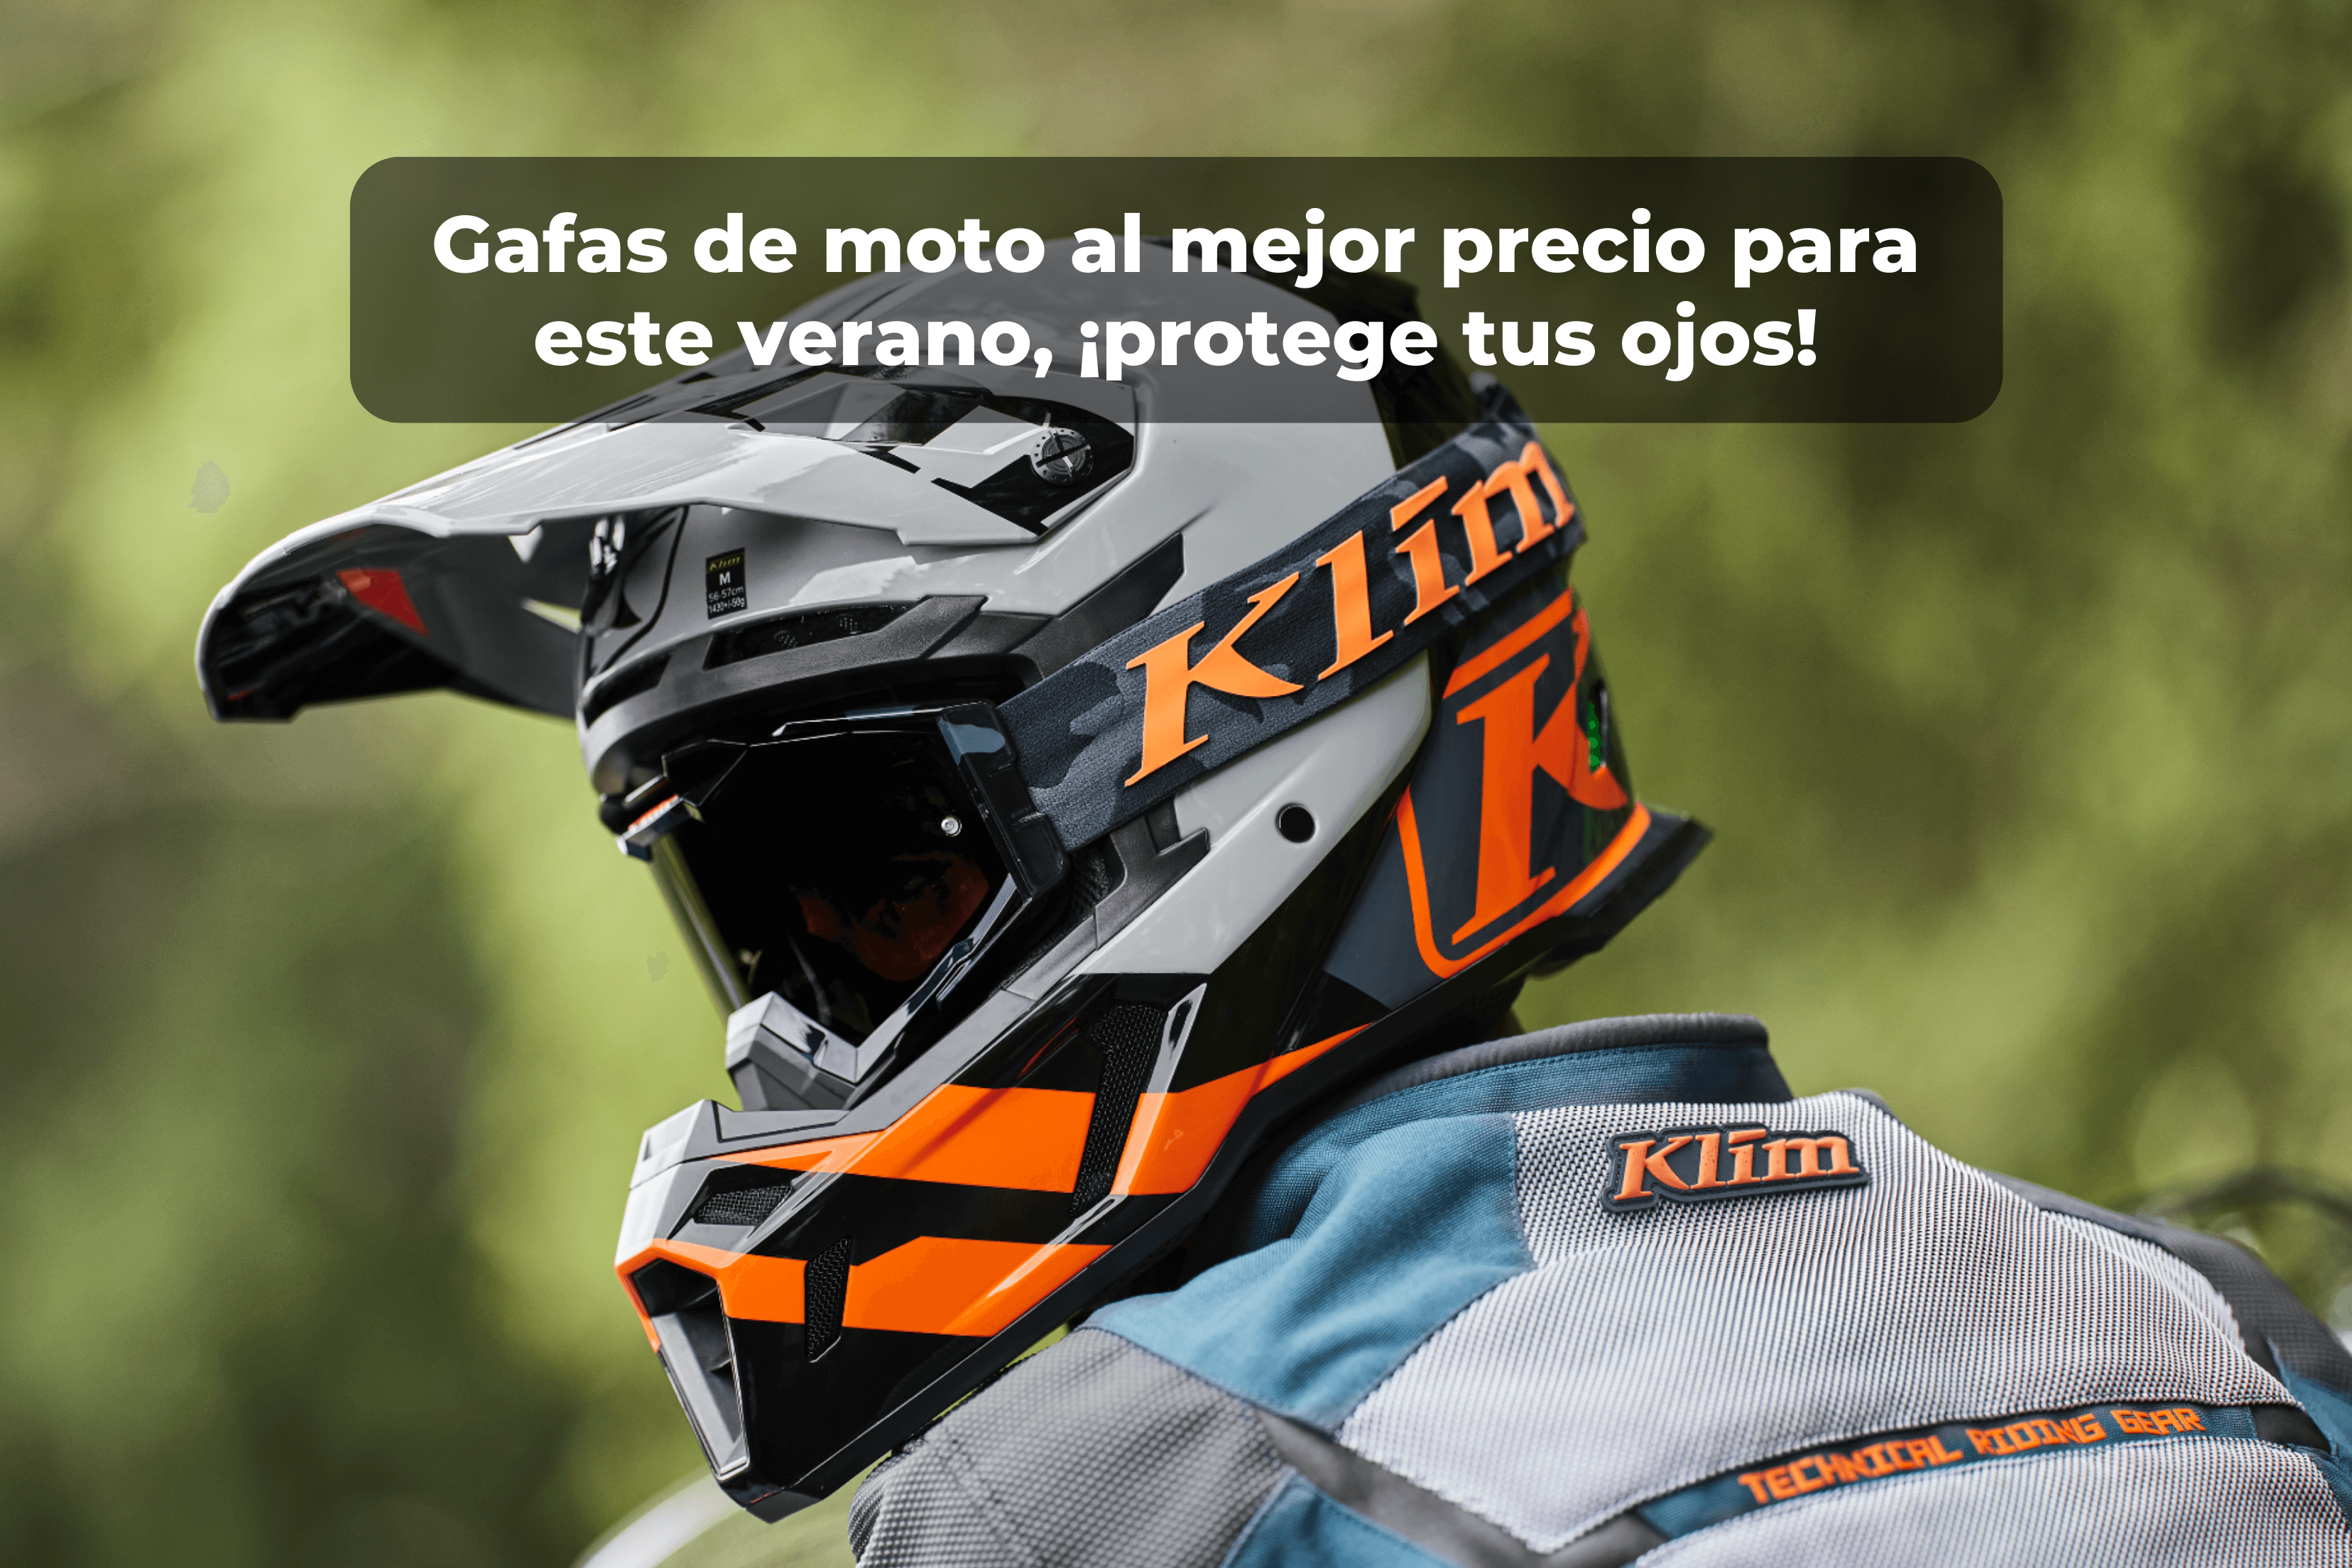 Gafas de motocross al mejor precio para este verano, ¡protege tus ojos en la montaña!